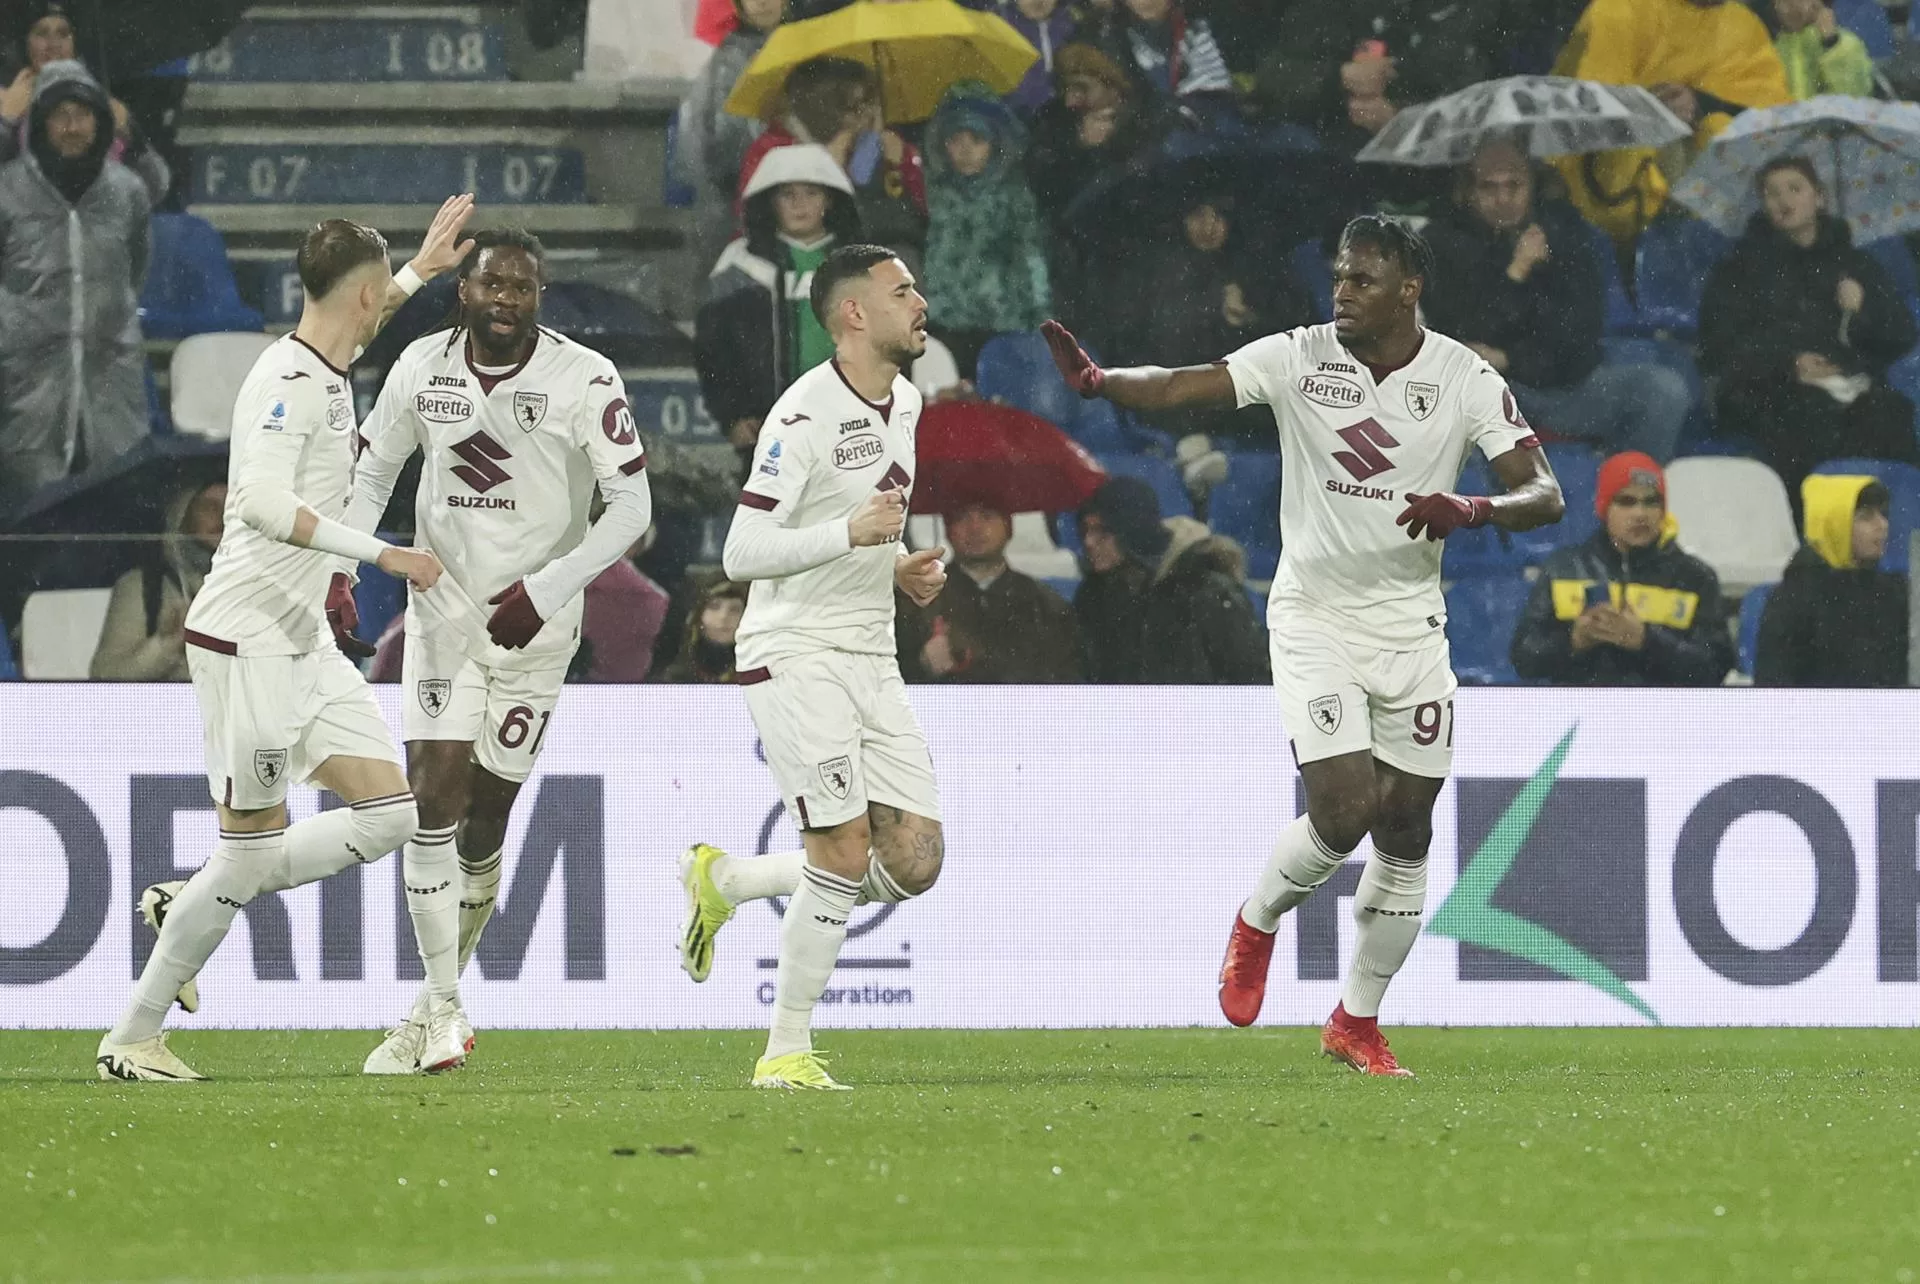 alt 1-1. Colombiano Zapata rascata un empate ante el Sassuolo